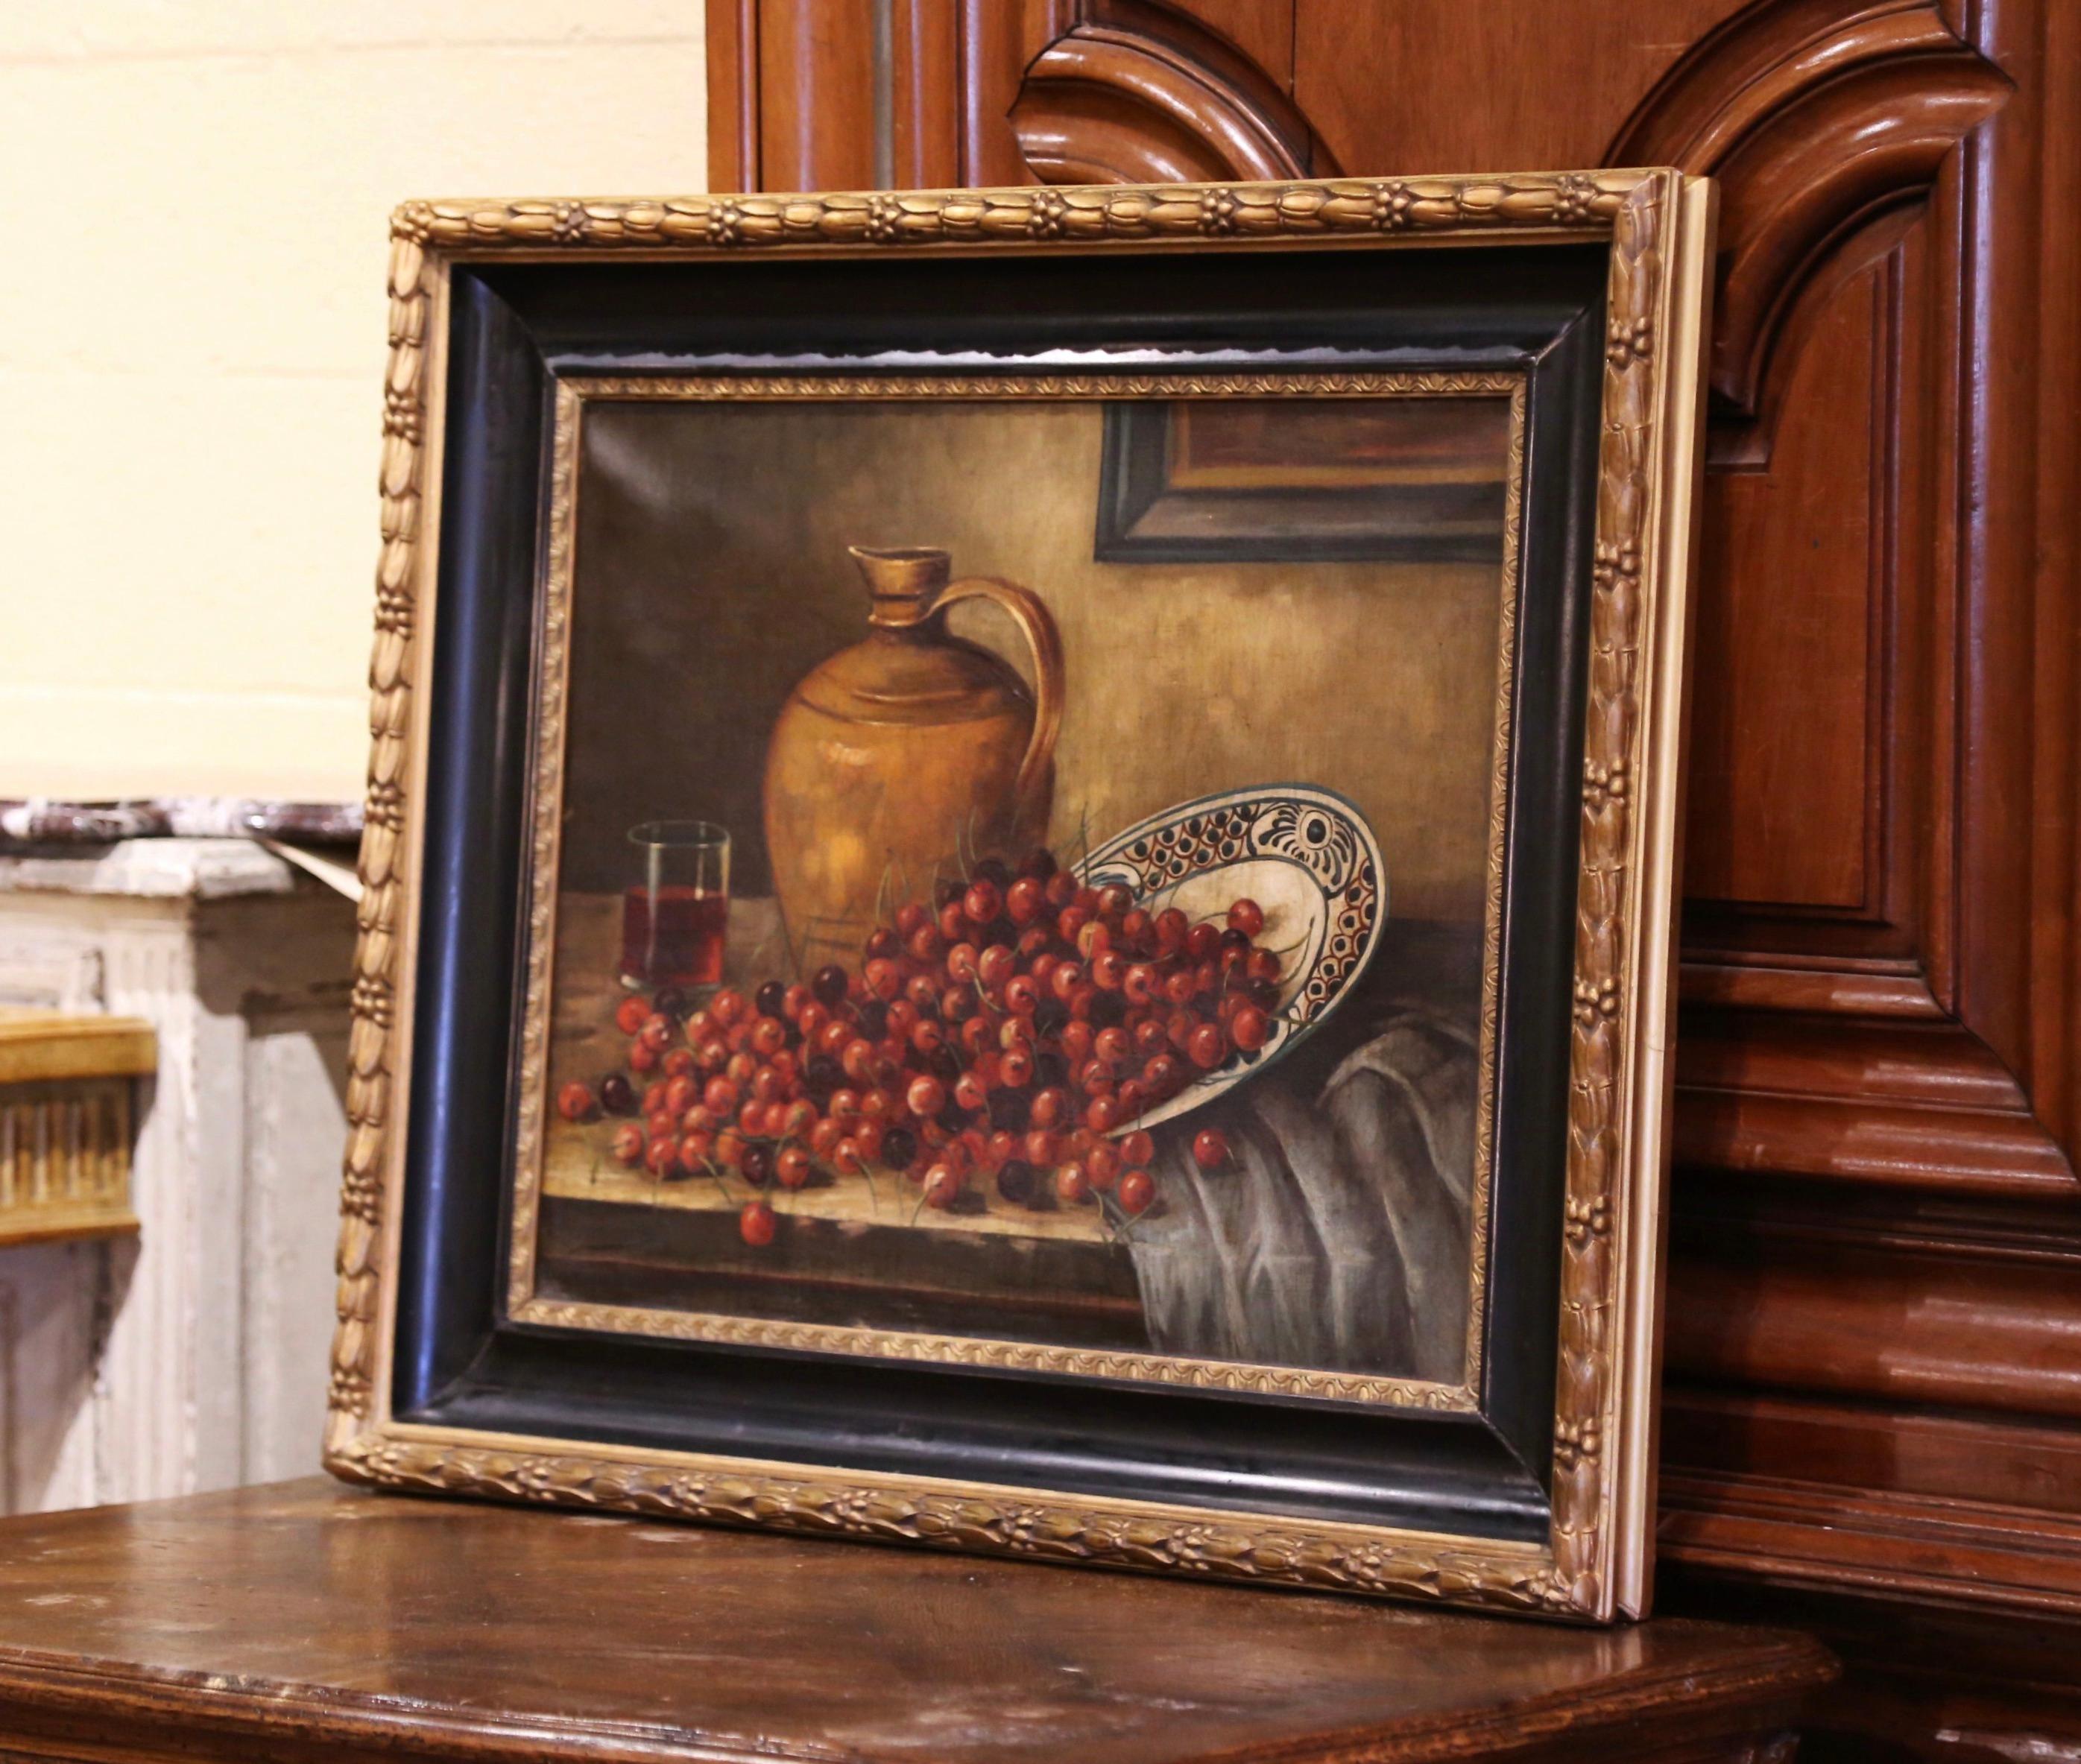 Peinte à la main en France vers 1880 et placée dans son cadre d'origine sculpté en bois doré et noirci, cette grande œuvre d'art représente une nature morte de table avec des raisins s'écoulant d'une assiette en faïence, avec une cruche à vin en